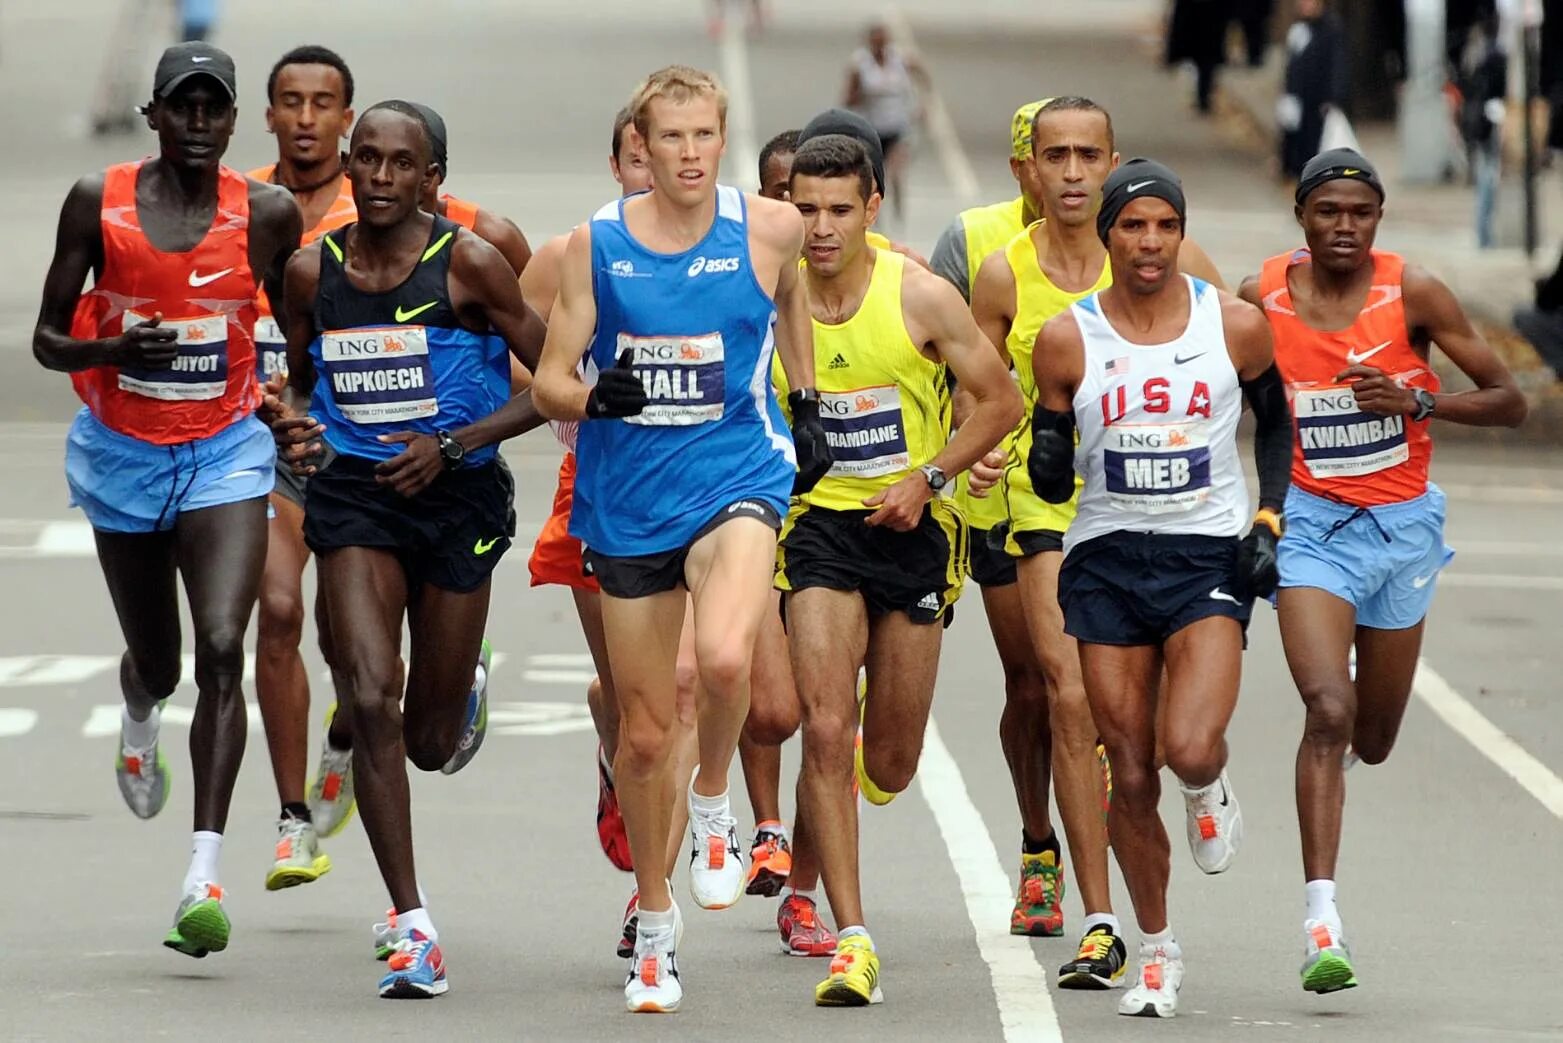 Марафон дисциплина легкой атлетики представляющая. Эллисон Браун марафонец. Бег на длинные дистанции (5000 м, 10000 м, 42195 м). Легкая атлетика марафонский бег. Стайерский бег в легкой атлетике.